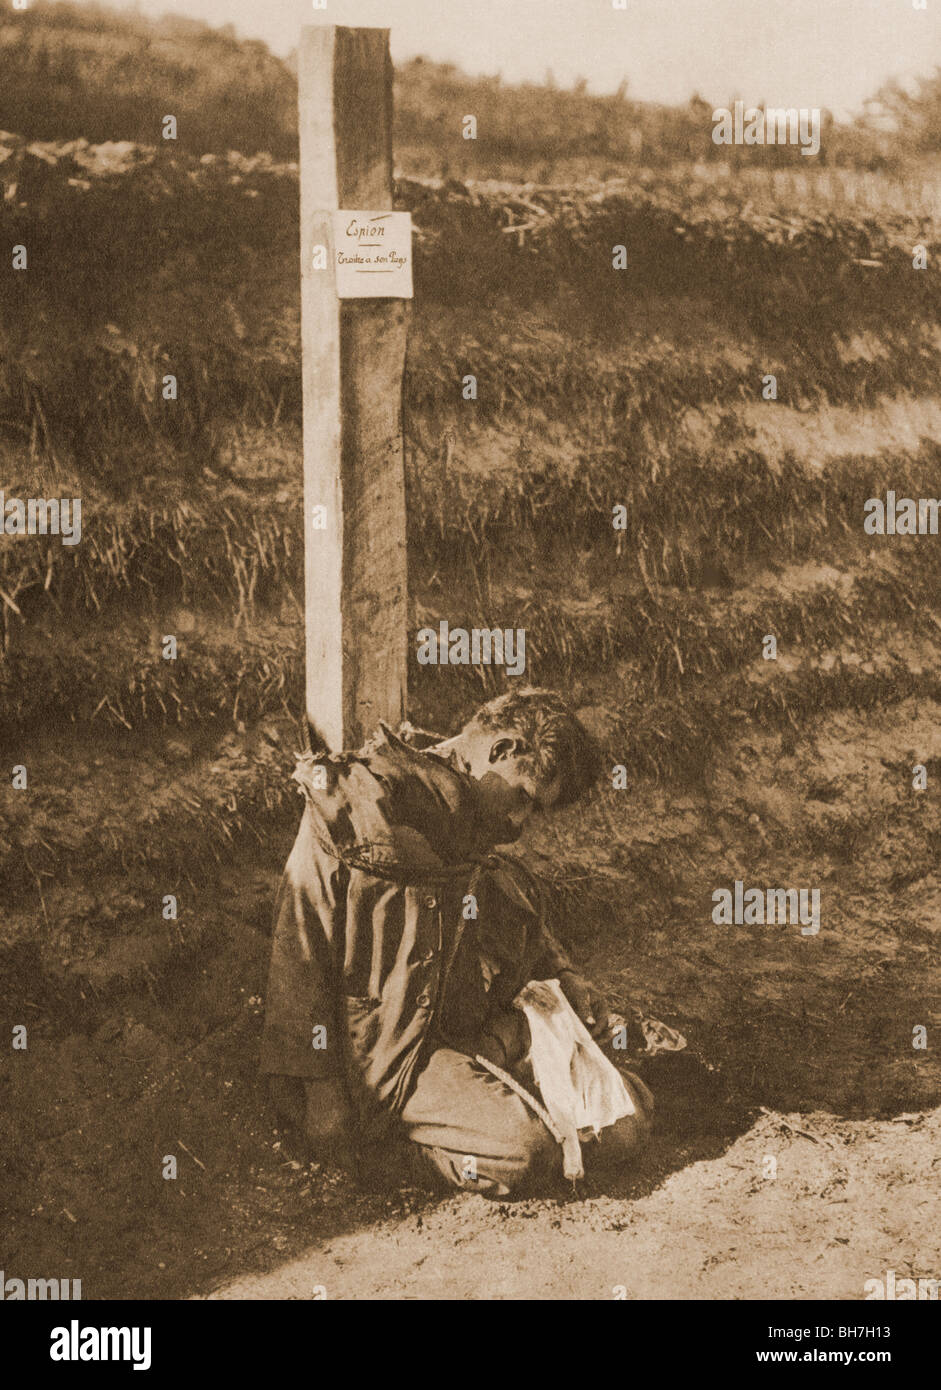 Eine ausgeführte Spion während des ersten Weltkrieges. Die Bekanntmachung über die Körper liest, Spion, Verräter seines Landes. Stockfoto